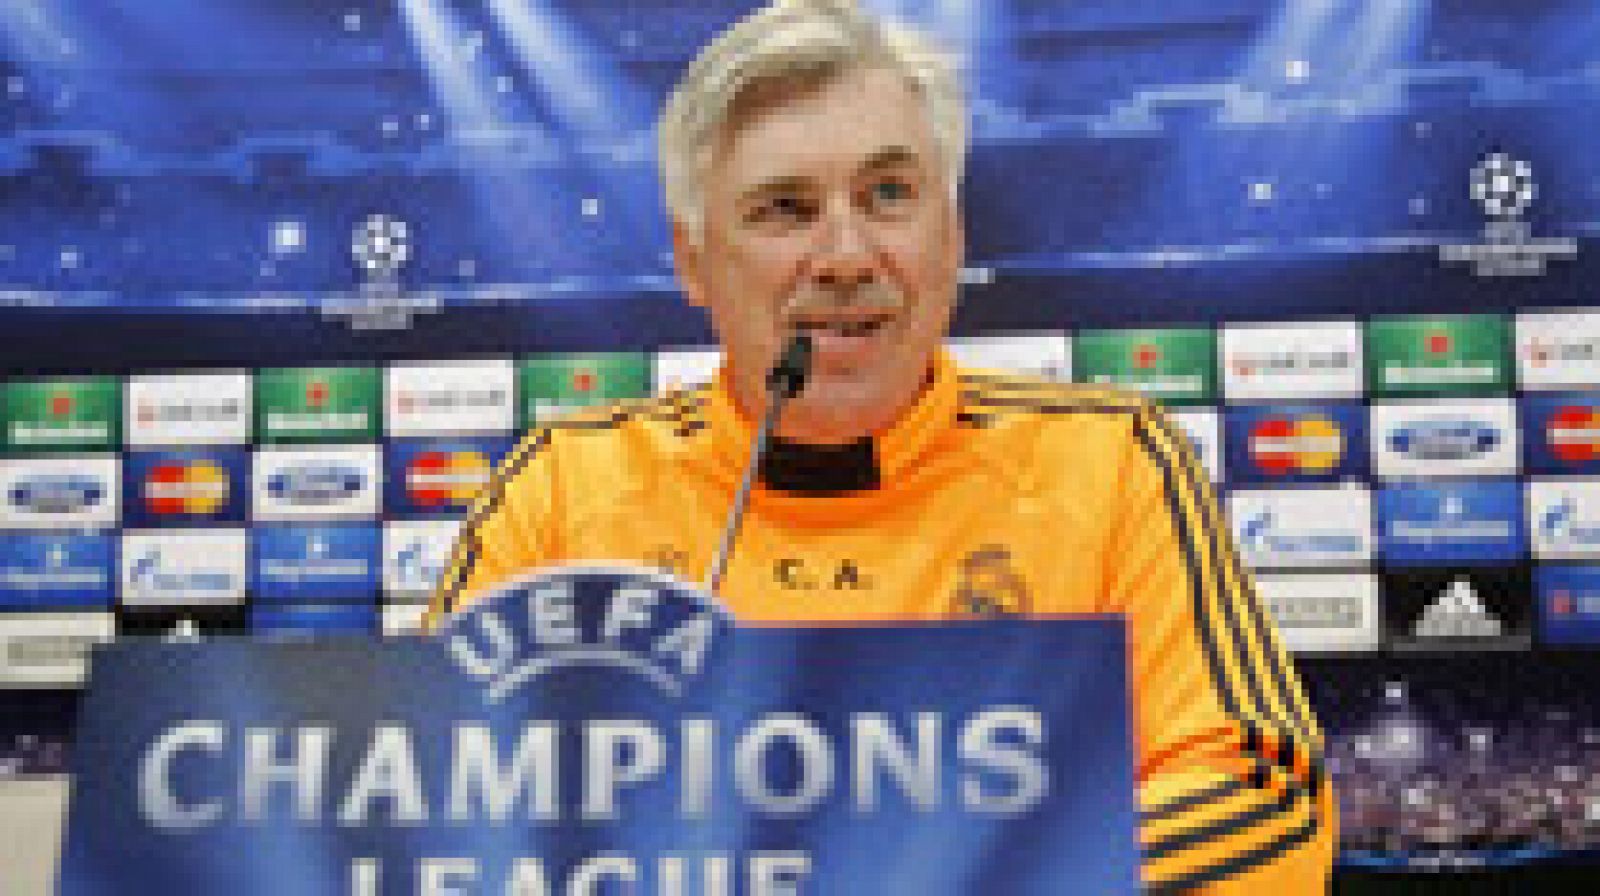 El entrenador del Real Madrid, Carlo Ancelotti, ha recordado antes de las semifinales de Champions su "buena racha contra el Bayern de Múnich". "No es una bestía negra para mí", ha asegurado el italiano, que ha advertido que "hay que hacer todo bien,